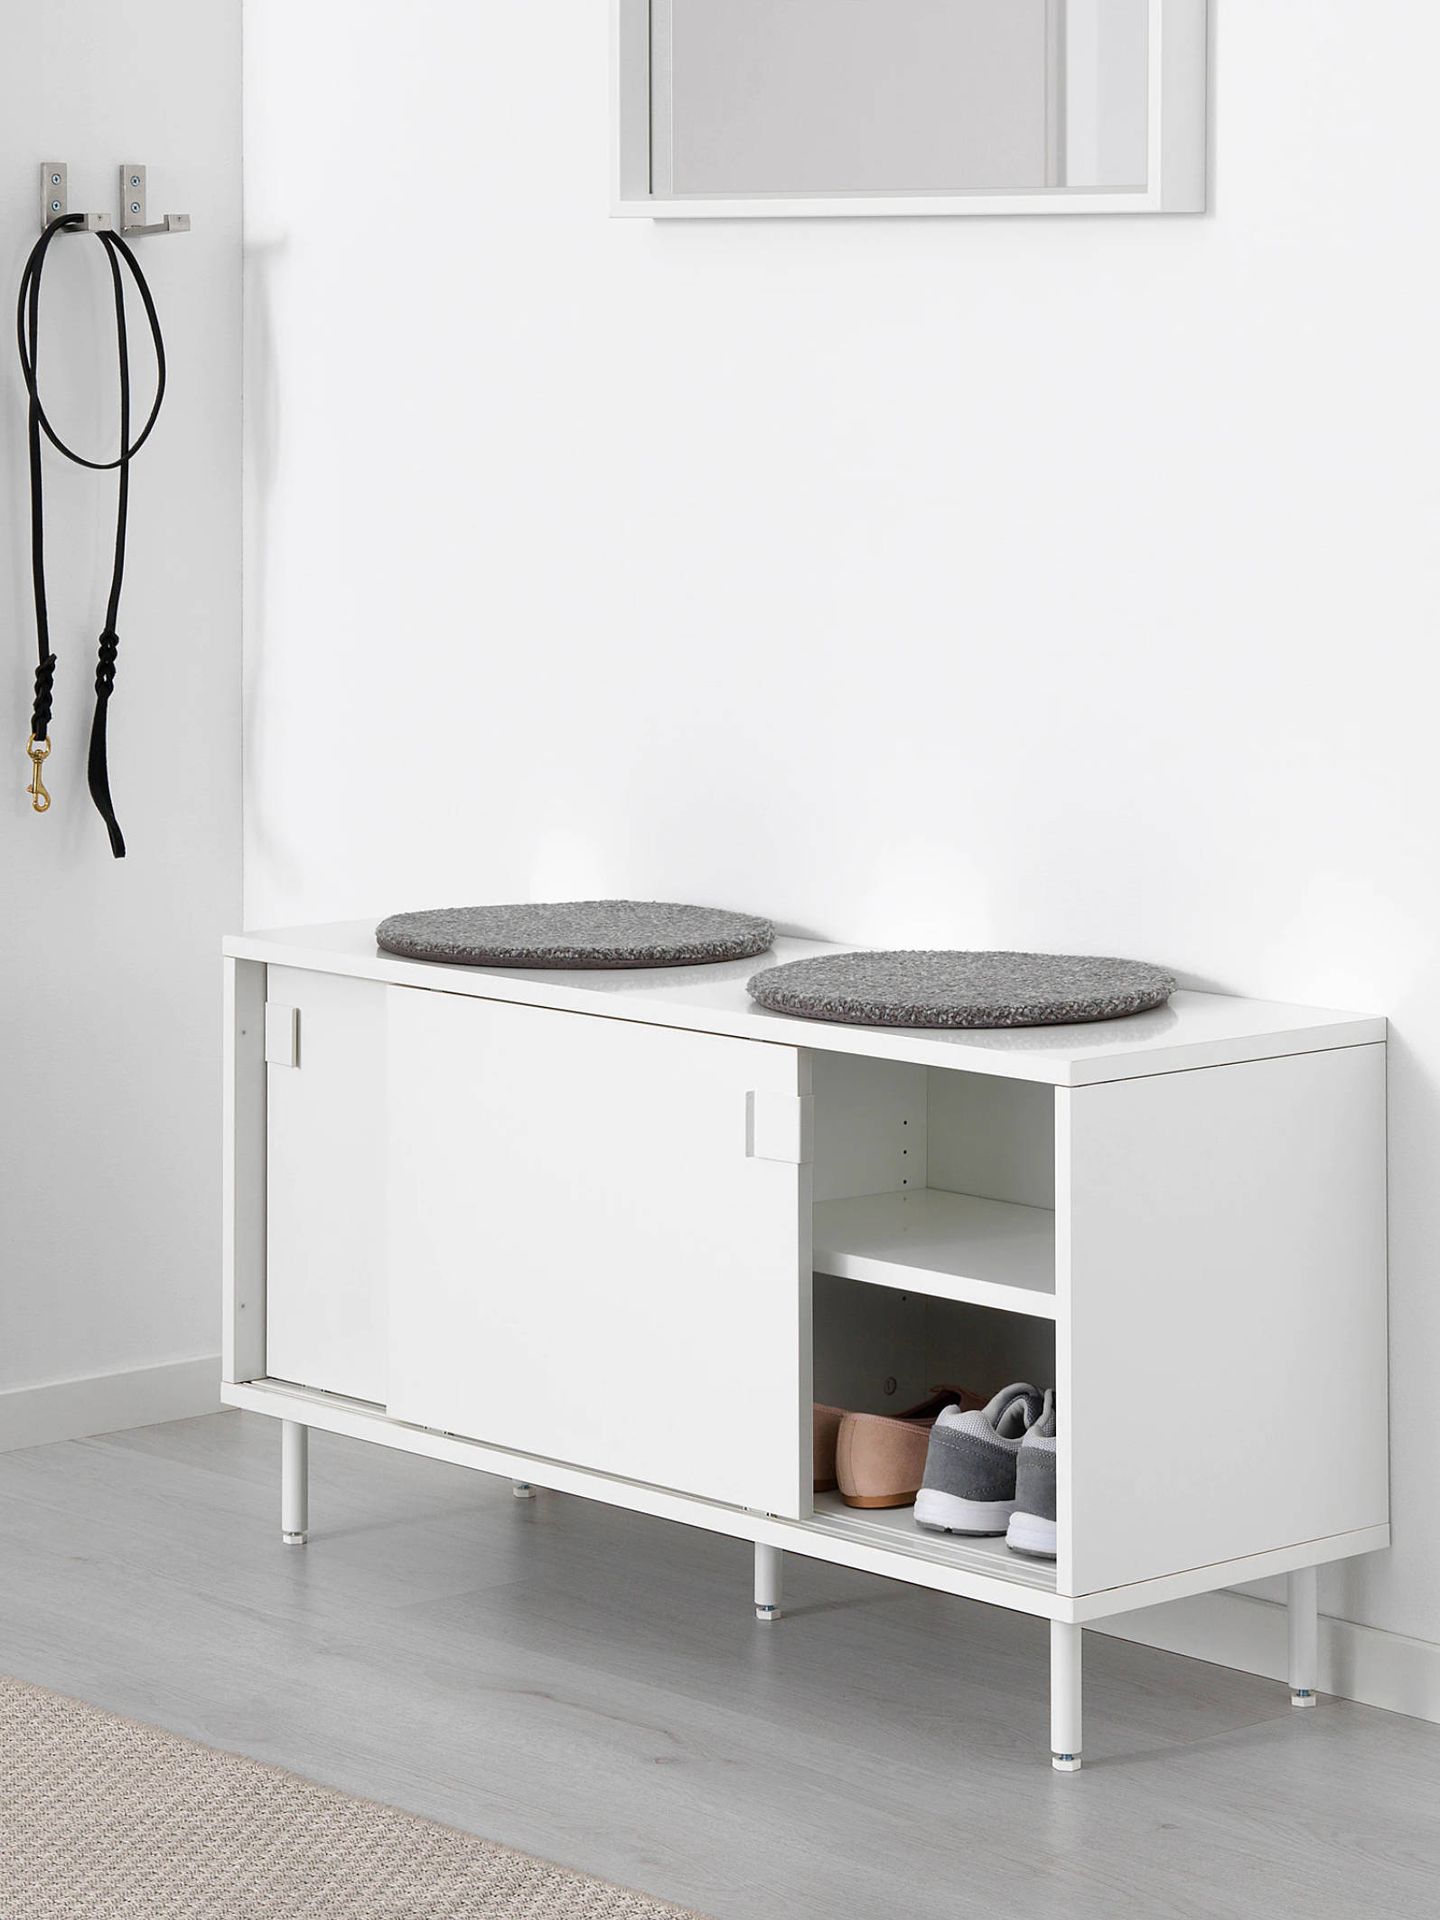 Decora el recibidor de tu casa con este mueble de Ikea. (Cortesía)